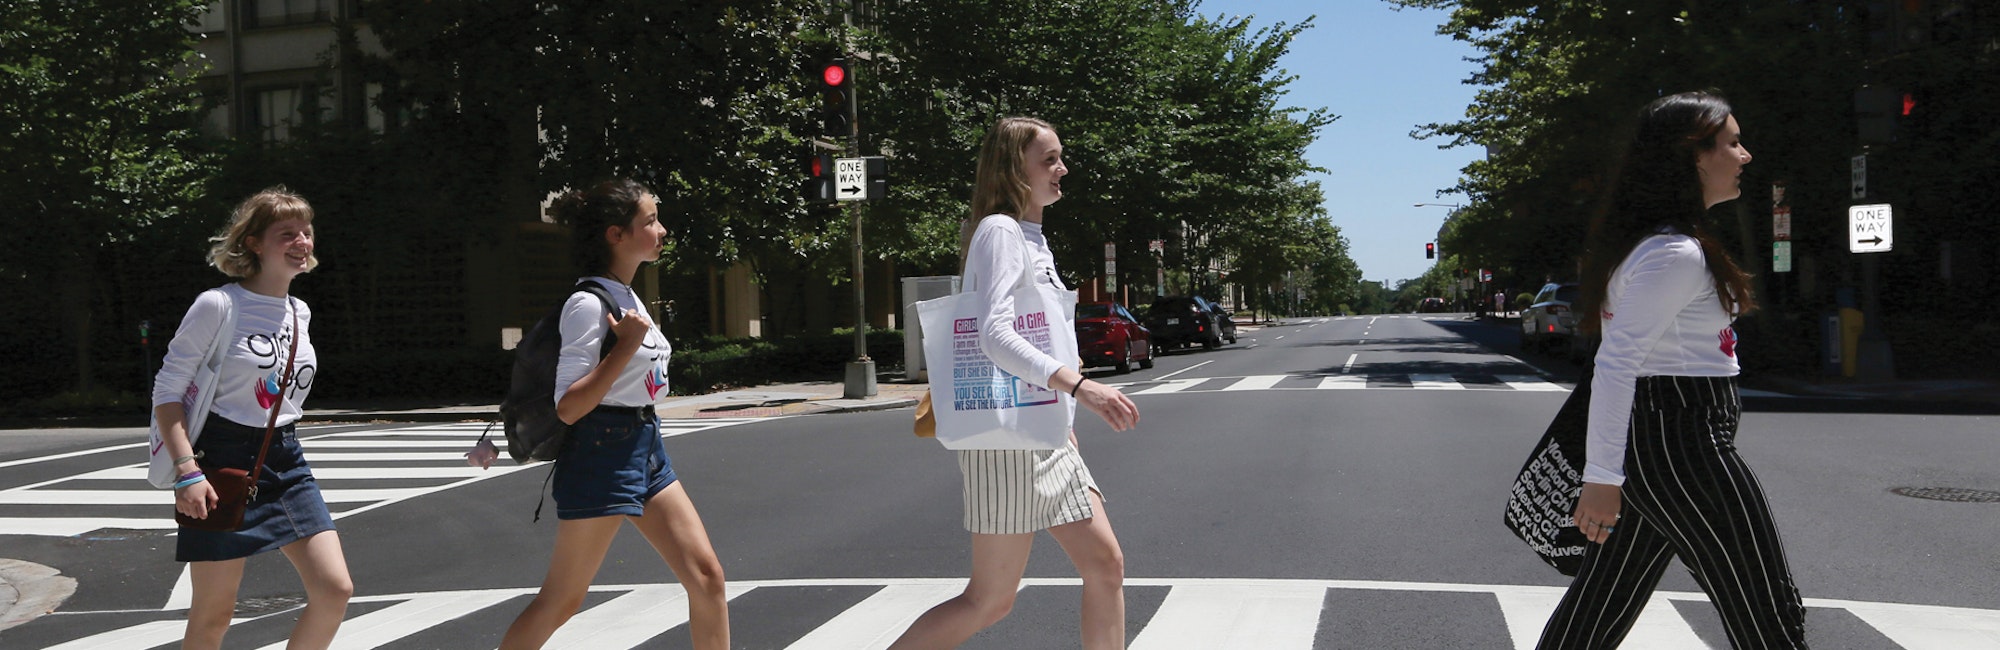 5 meninas atravessam a rua uma após a outra de frente com a camisa do seu conselheiro adolescente